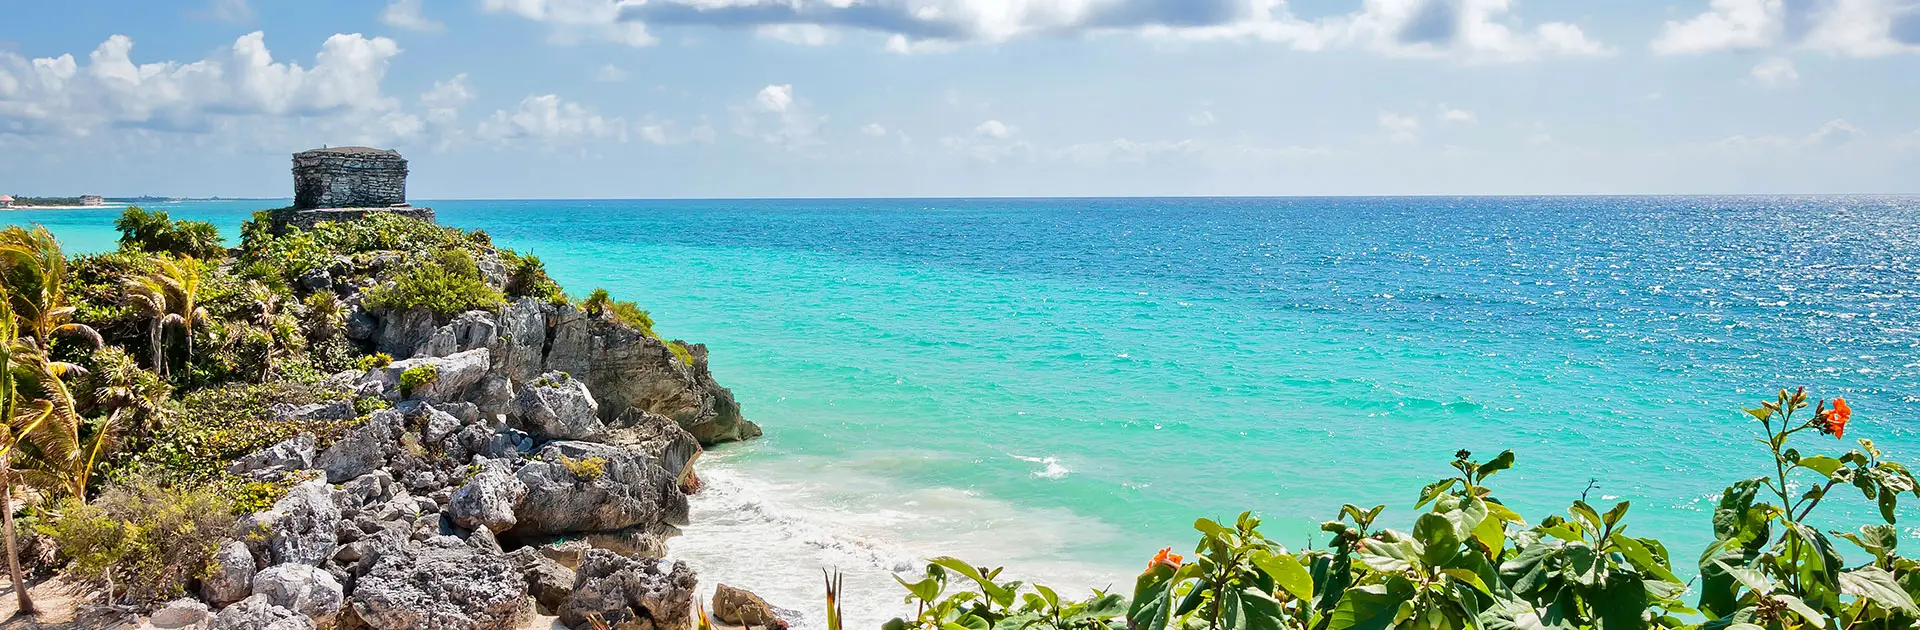 Oferta Flash para viajar a Riviera Maya en Marzo - Central de Vacaciones